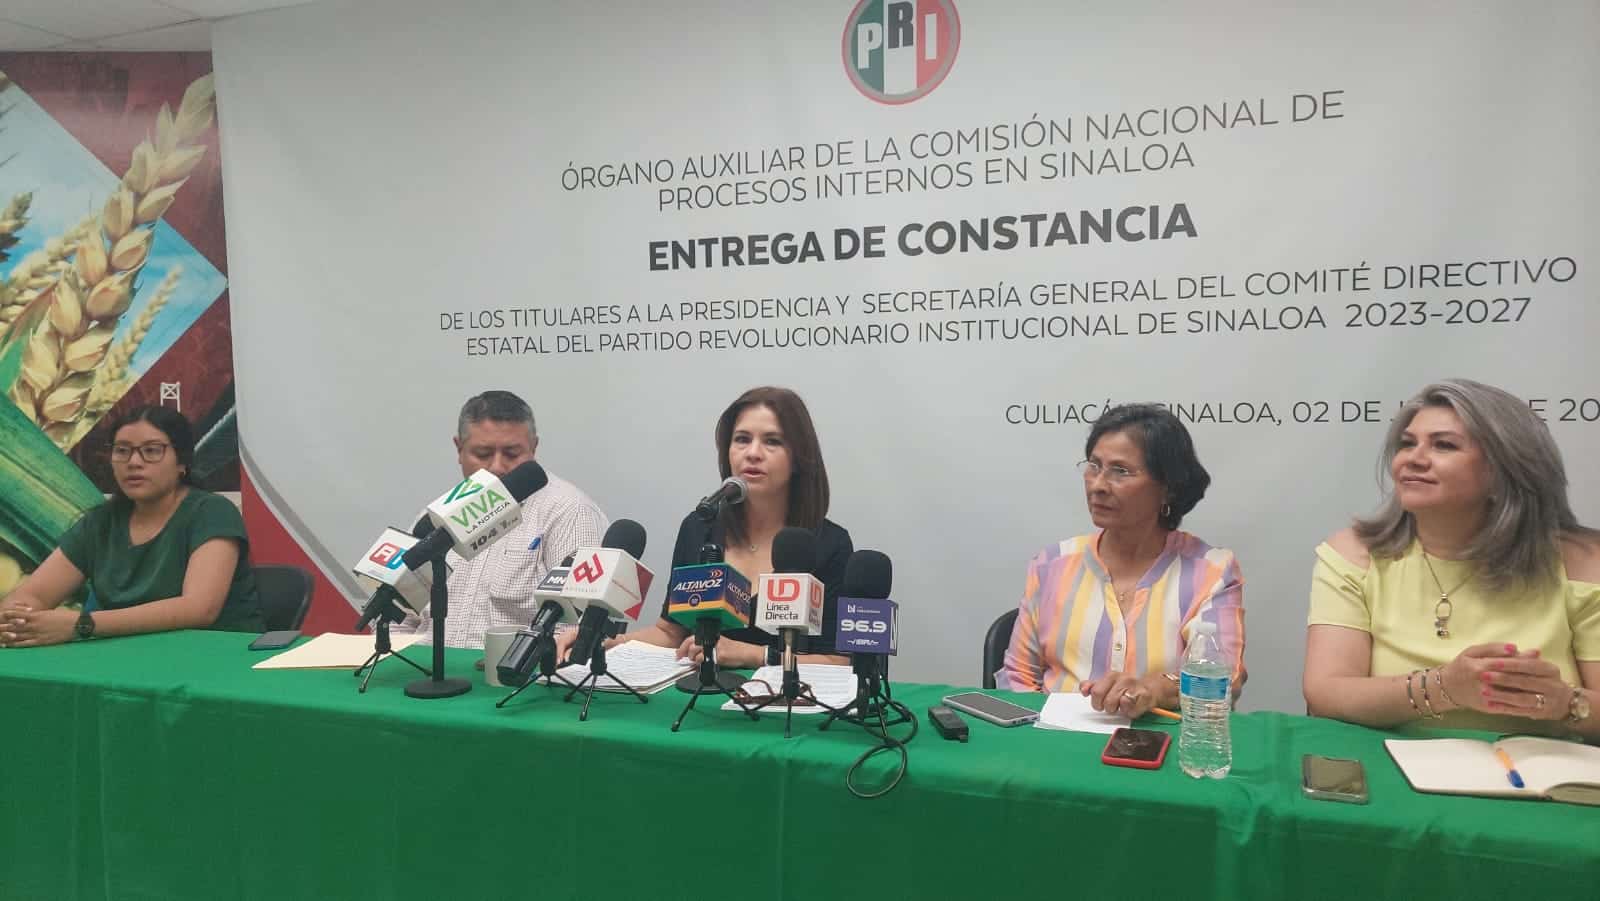 Evento de entrega de constancia del Órgano Auxiliar de la Comisión Nacional de Procesos Internos en Sinaloa del PRI